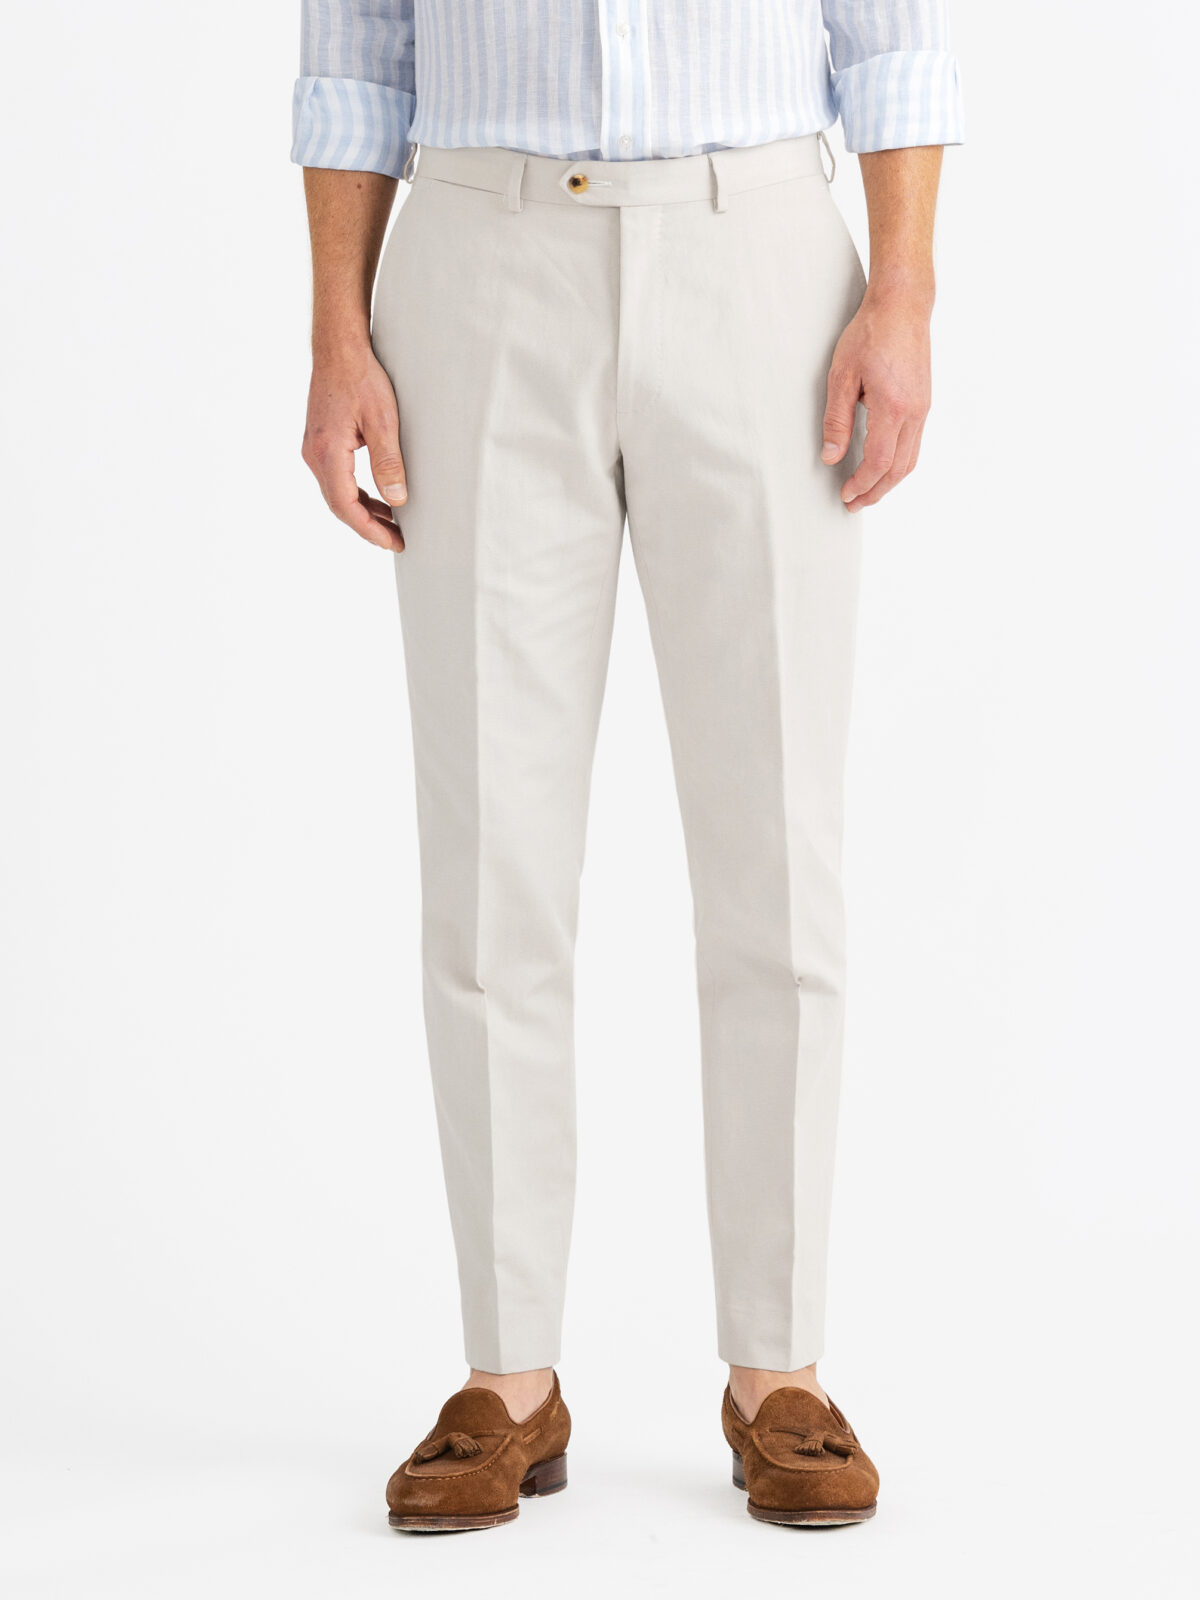 Man Pants Cotton Linen Beige Blue Summer Breathable Linen Trousers